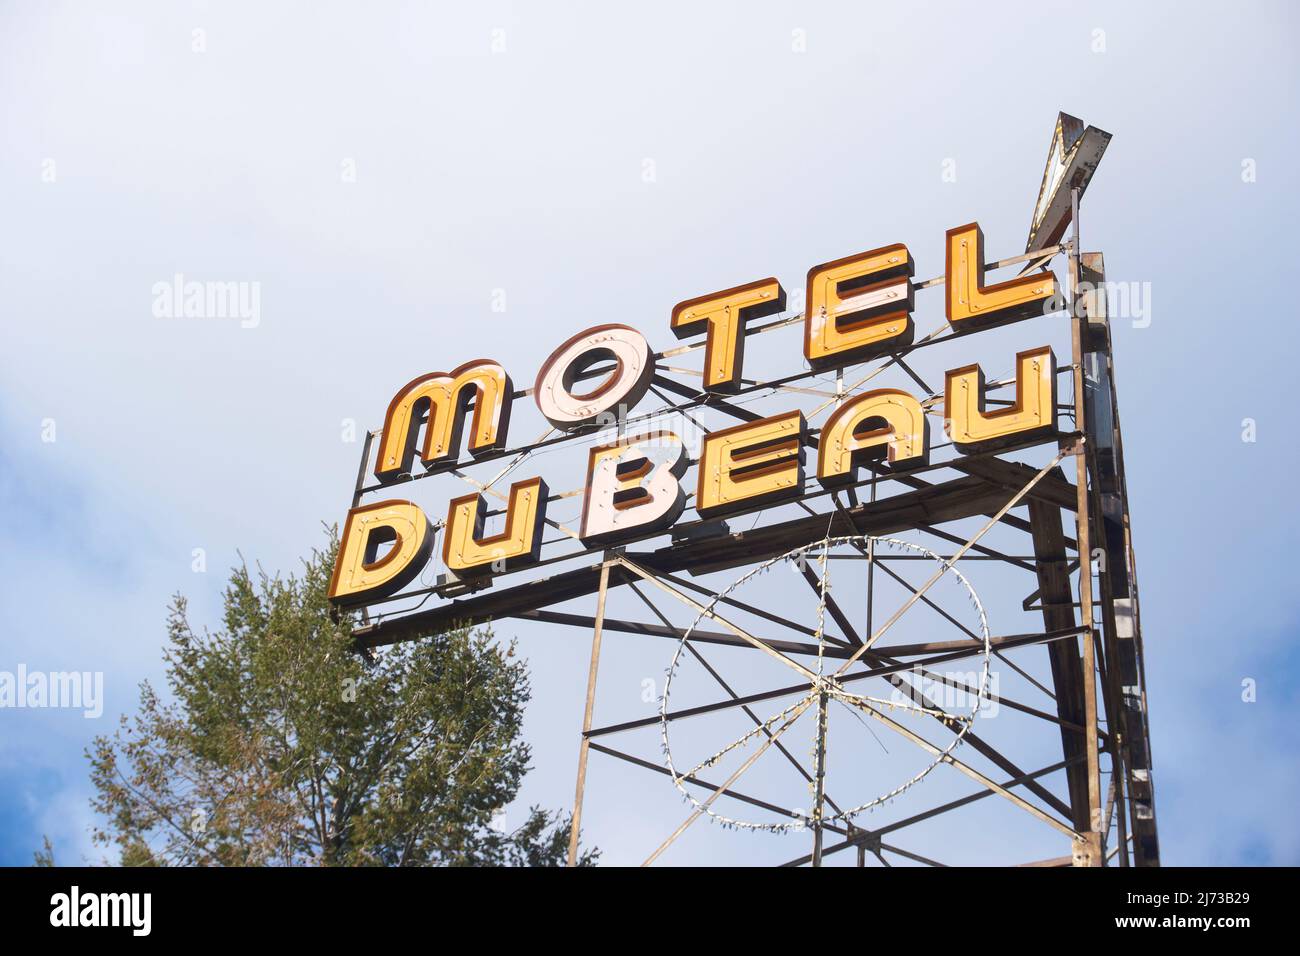 Motel Du Beau im Zentrum von Flagstaff, Arizona. Stockfoto